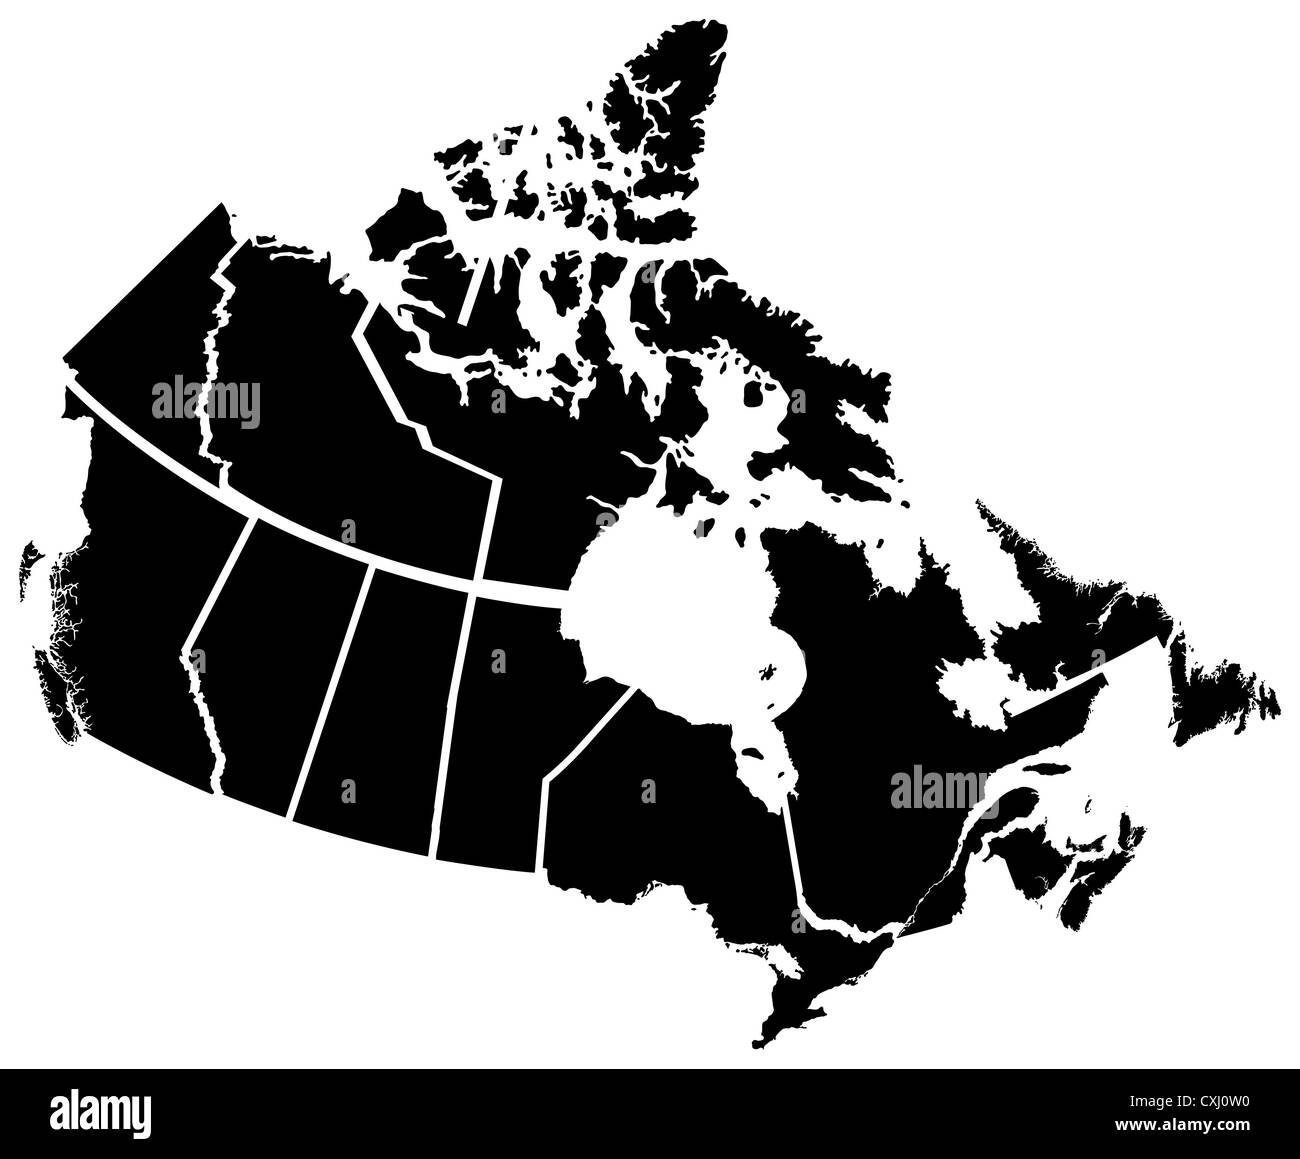 Detaillierte Karte der kanadischen Territorien, jedes Gebiet auf einer separaten Ebene beschriftet Stockfoto